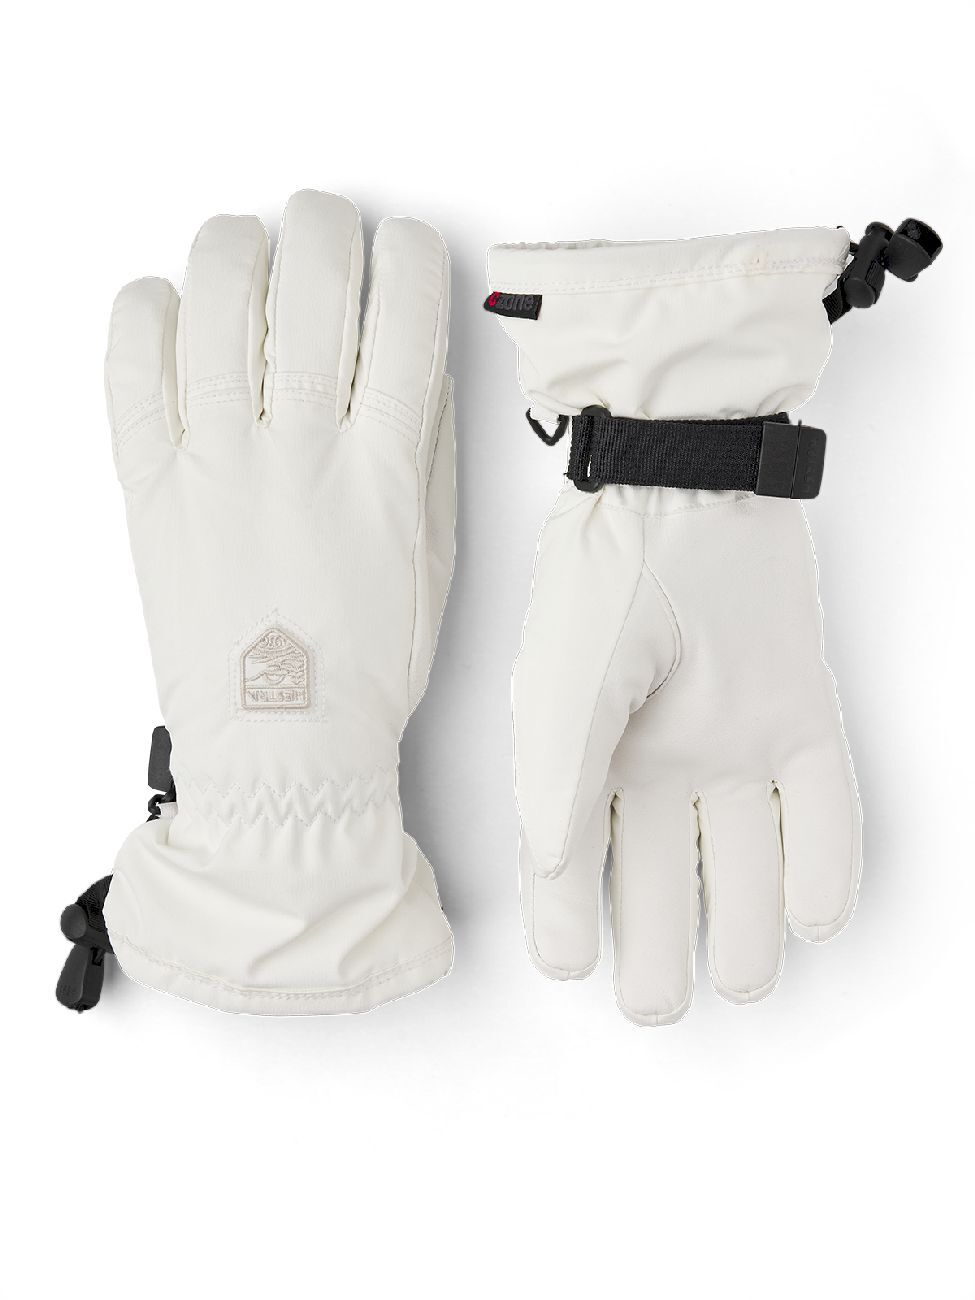 Hestra Powder CZone - Ski gloves - Women's